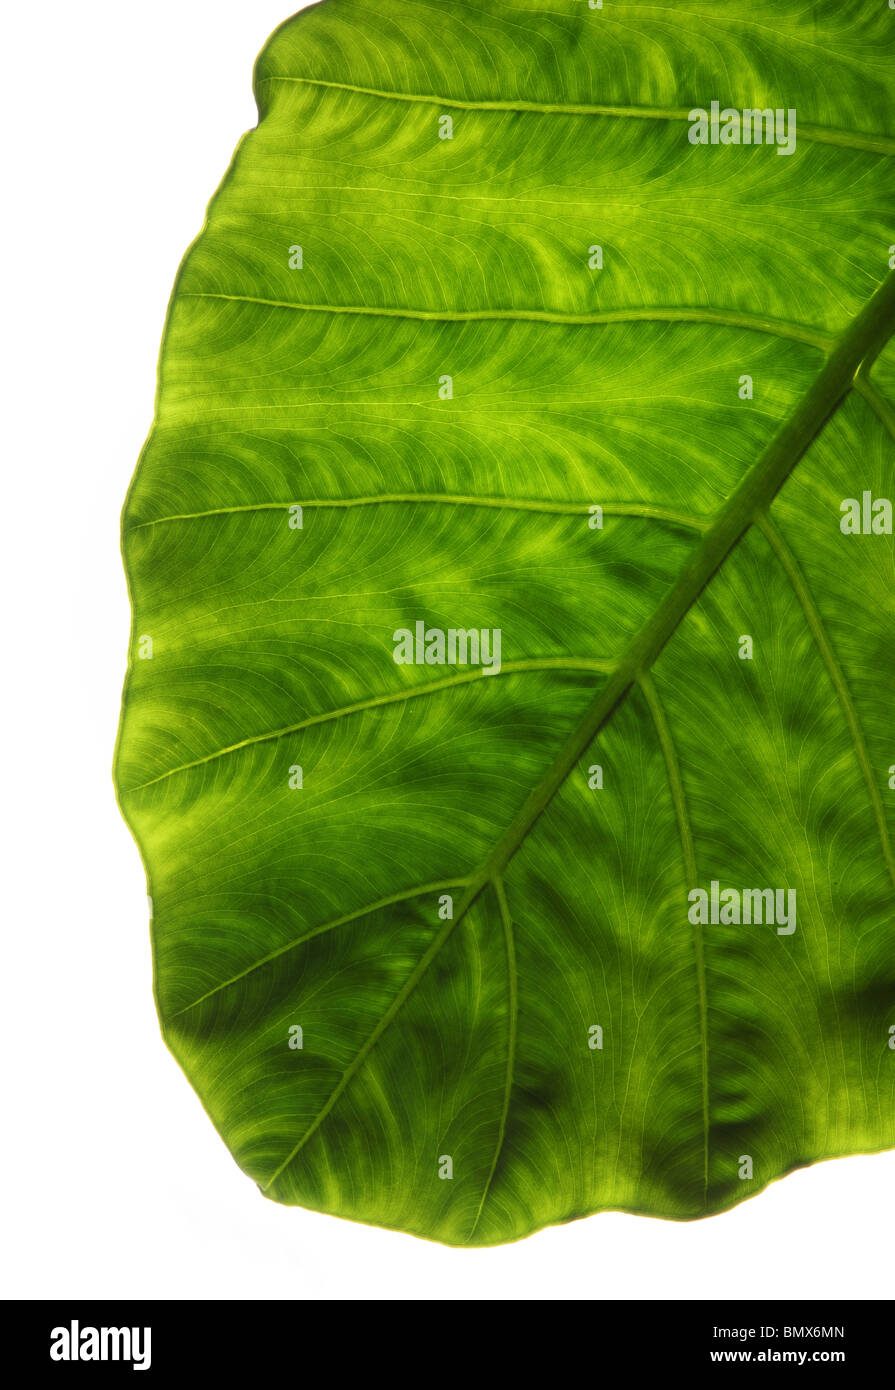 La fin d'une plante verte feuille, fond blanc Banque D'Images